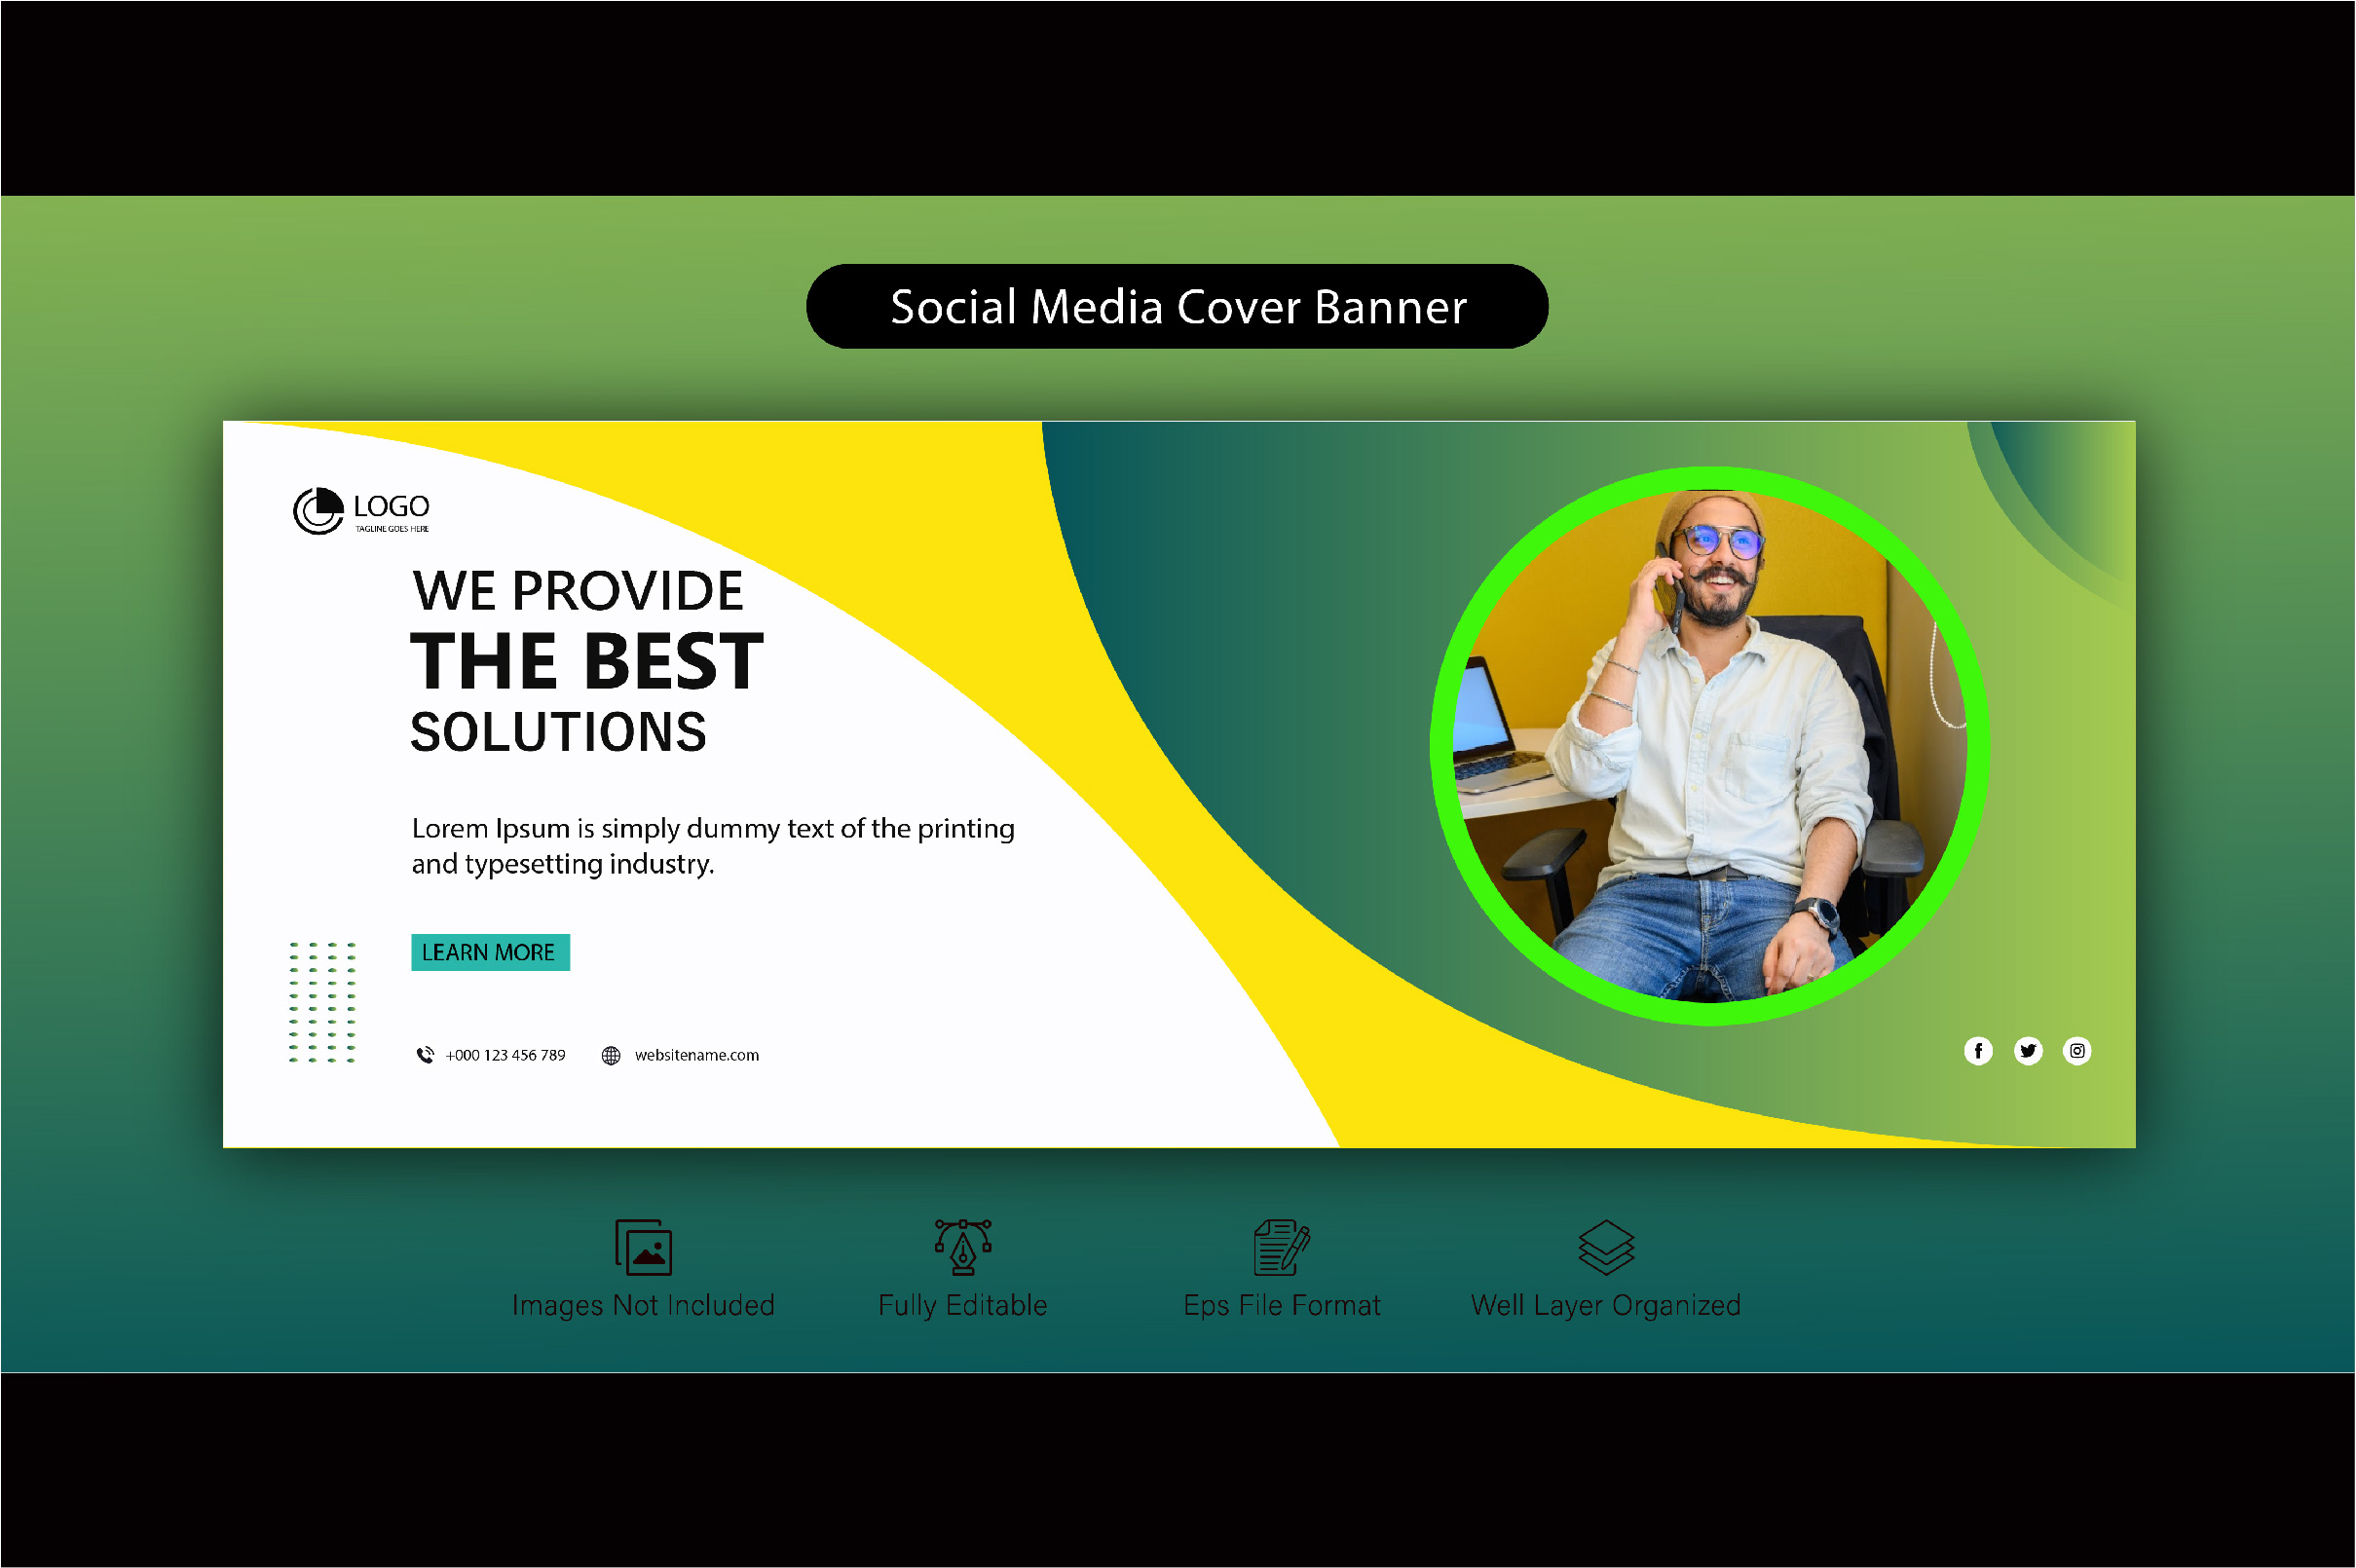 Facebook Cover Banner Design Bundle 01, green-yellow design.